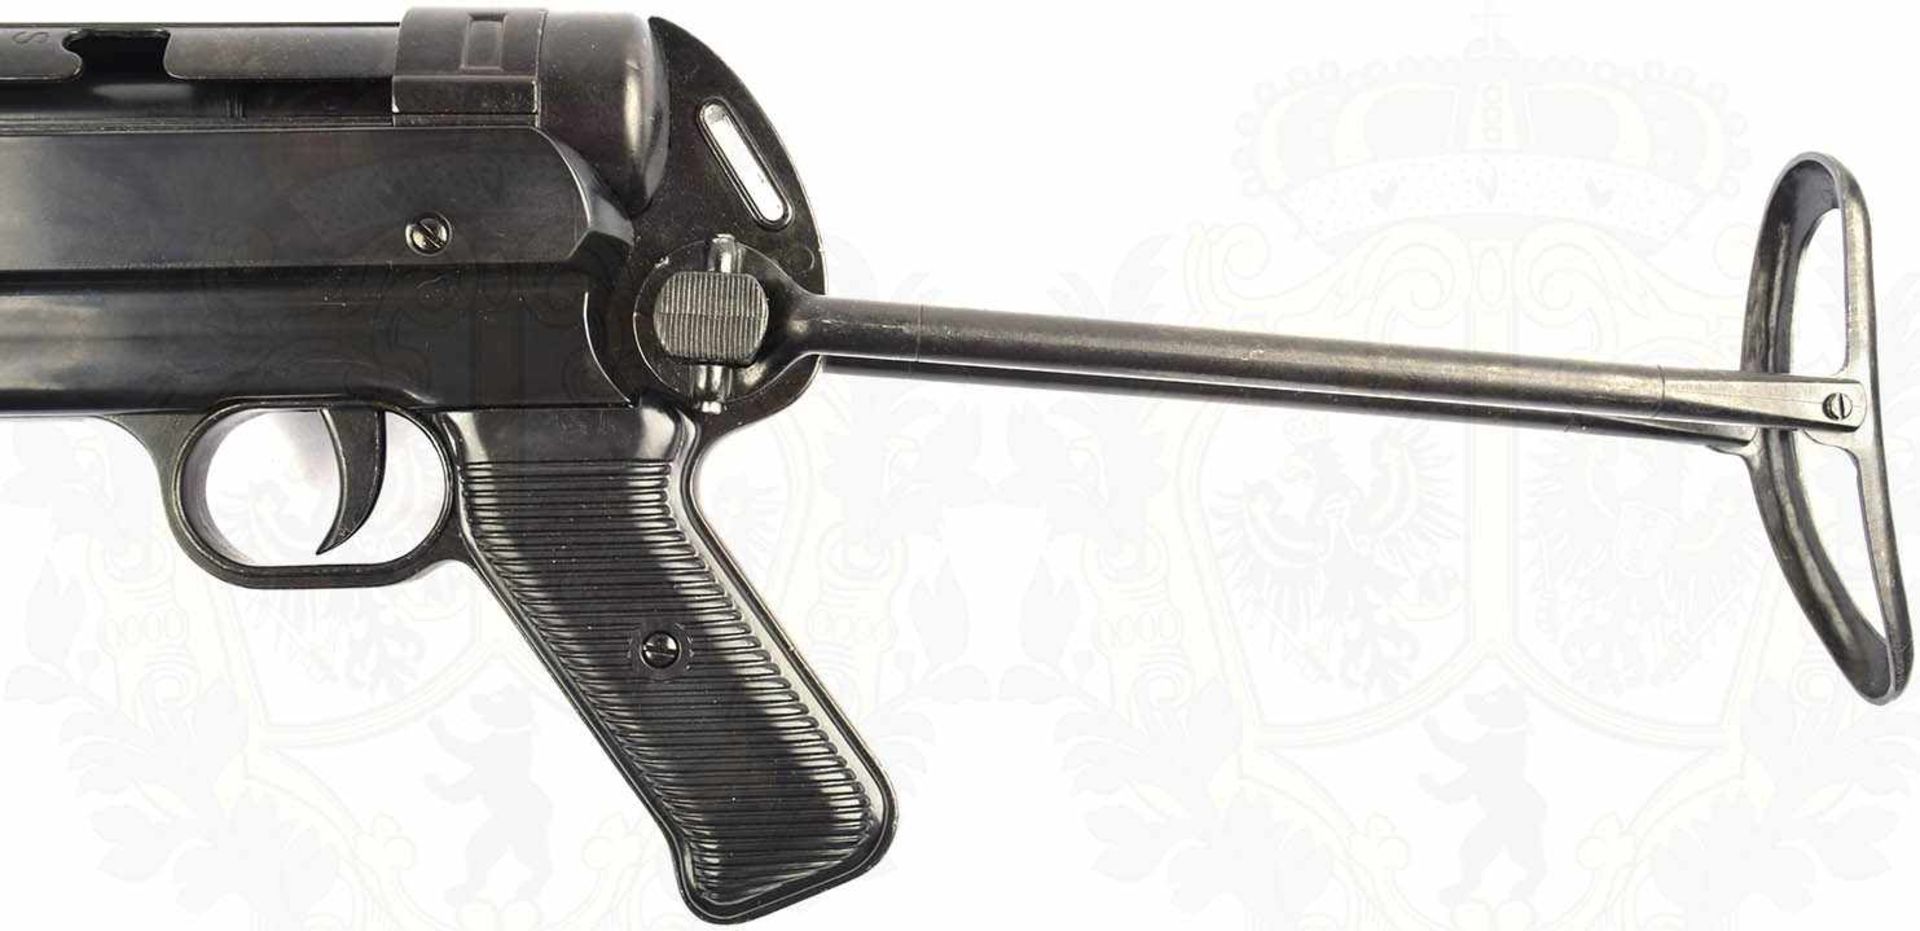 MASCHINENPISTOLE MP 40, brüniert/geschwärzt, Schaft u. Pistolengriff schwarzer Kunststoff, Spann- - Bild 3 aus 8